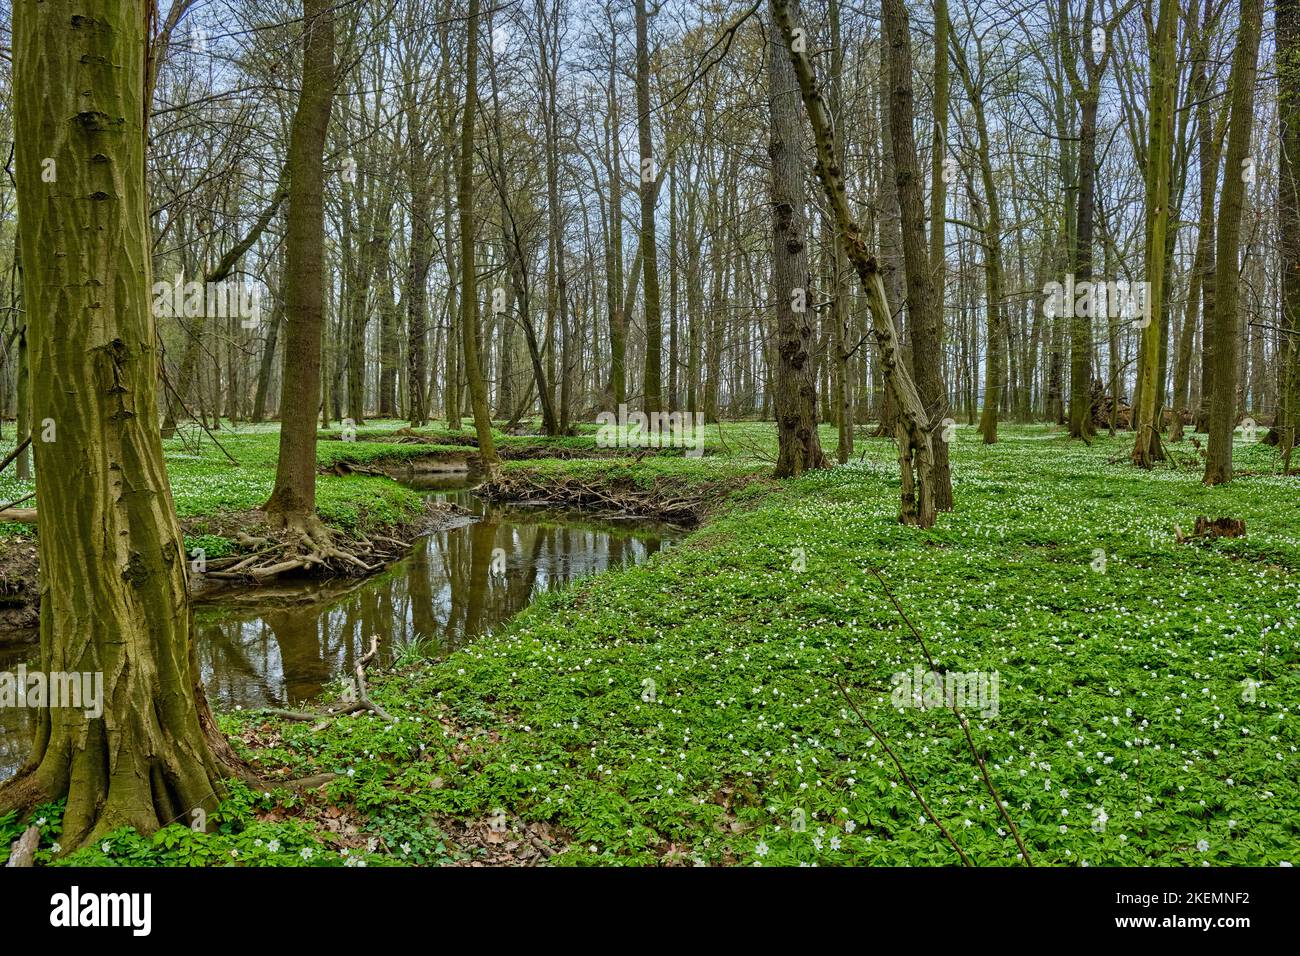 Das Naturschutzgebiet Lasker Auenwald im sorbischen Siedlungsgebiet im Frühling, ein naturbelassener Auwald des Klosterwassers und beliebtes Naherholu Foto de stock